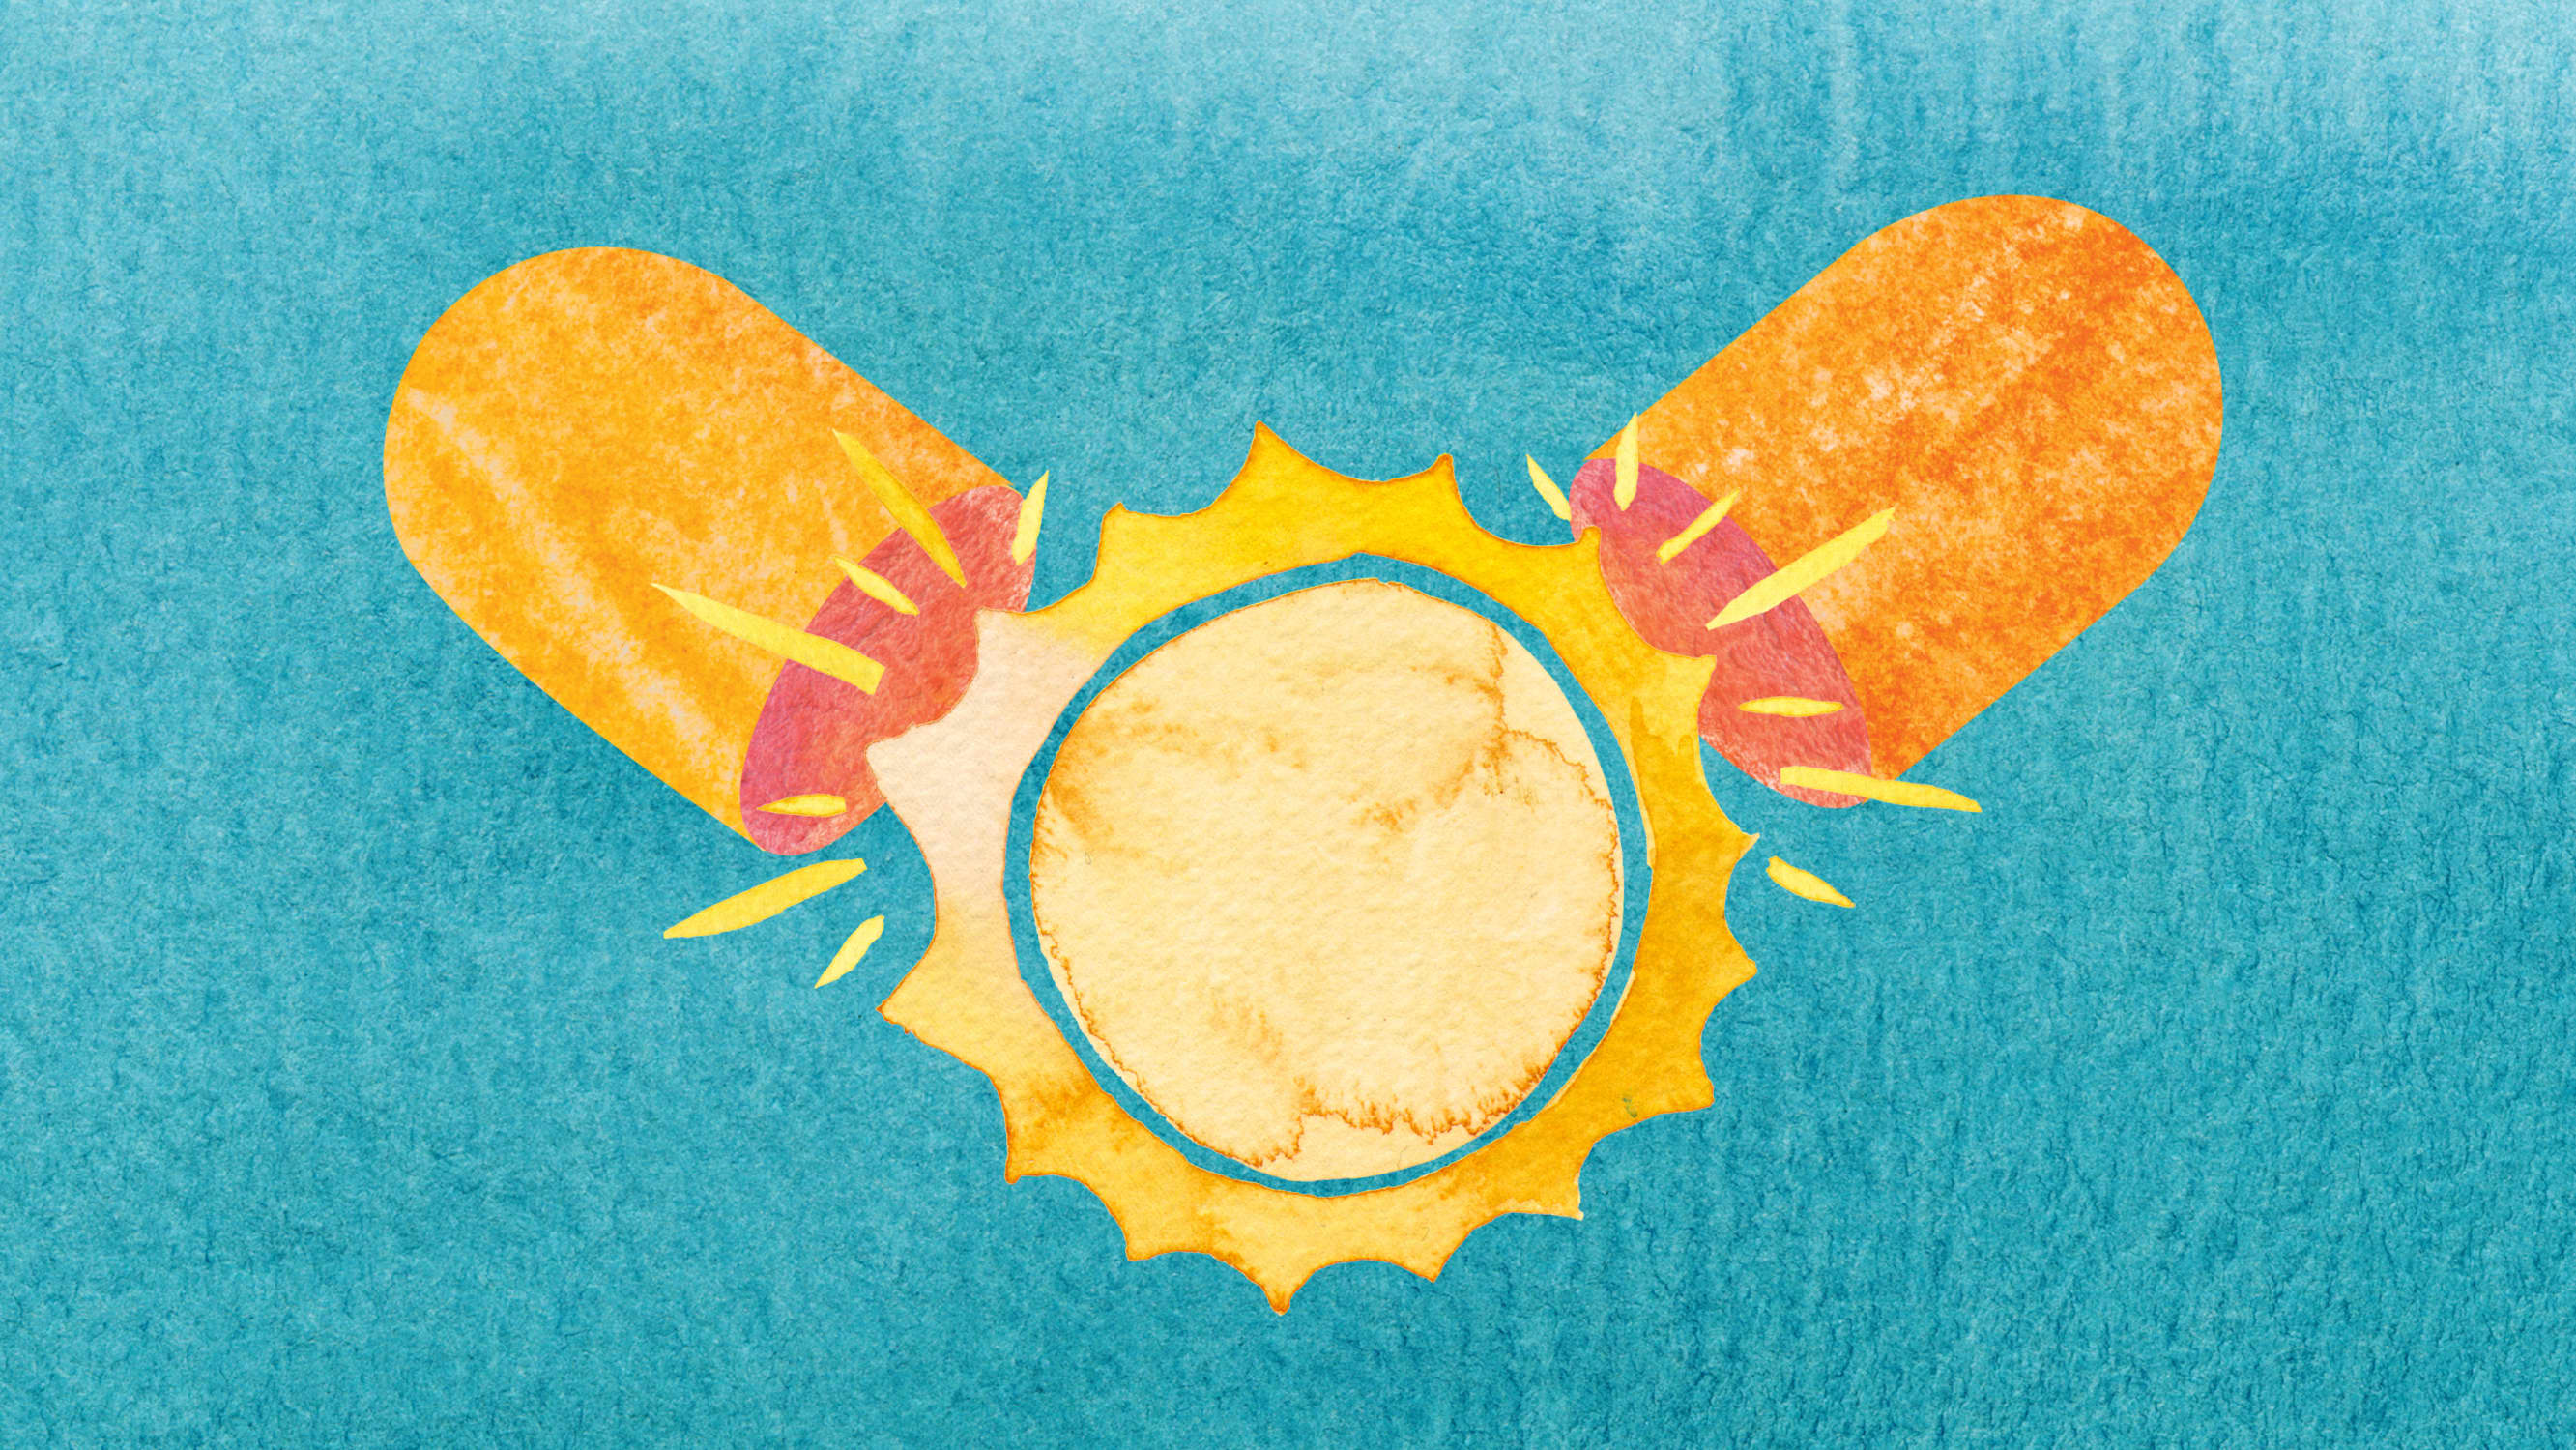 Artwork depicting sun in a capsule, representing Vitamin D